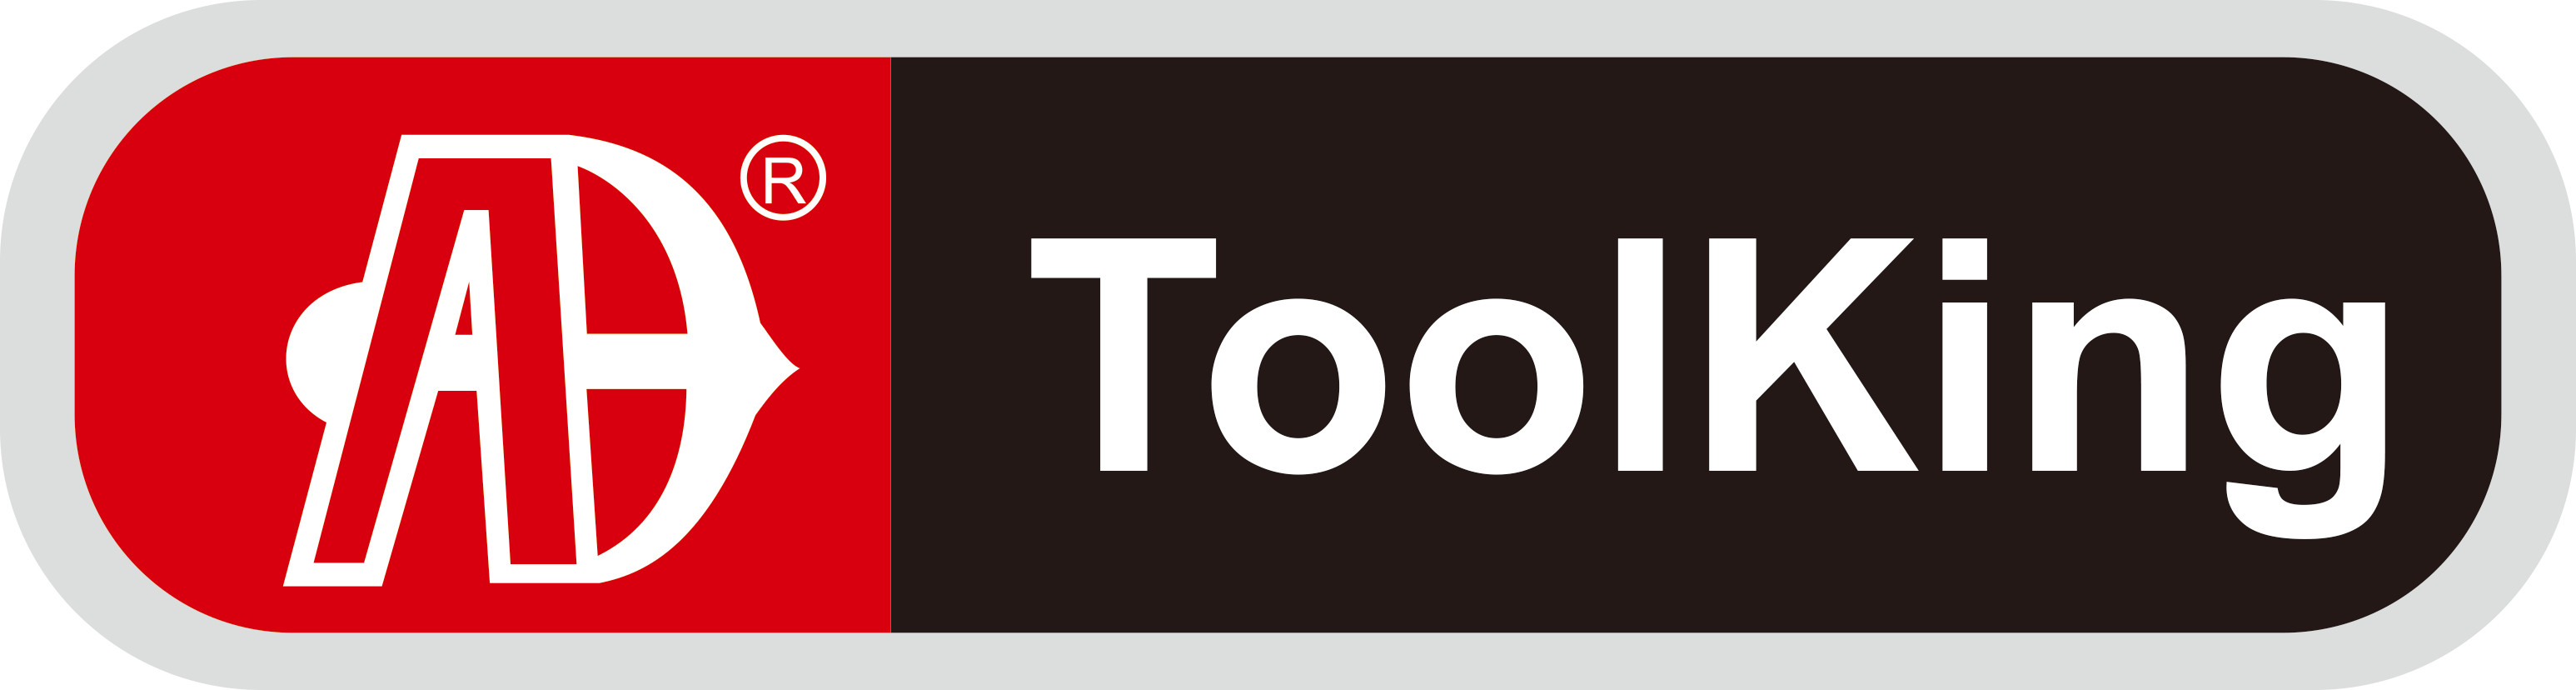 宁波震睿-安拓工具-ToolKing工具-汽保工具-五金工具-拓进工具-家用组套-套筒组套-工具车